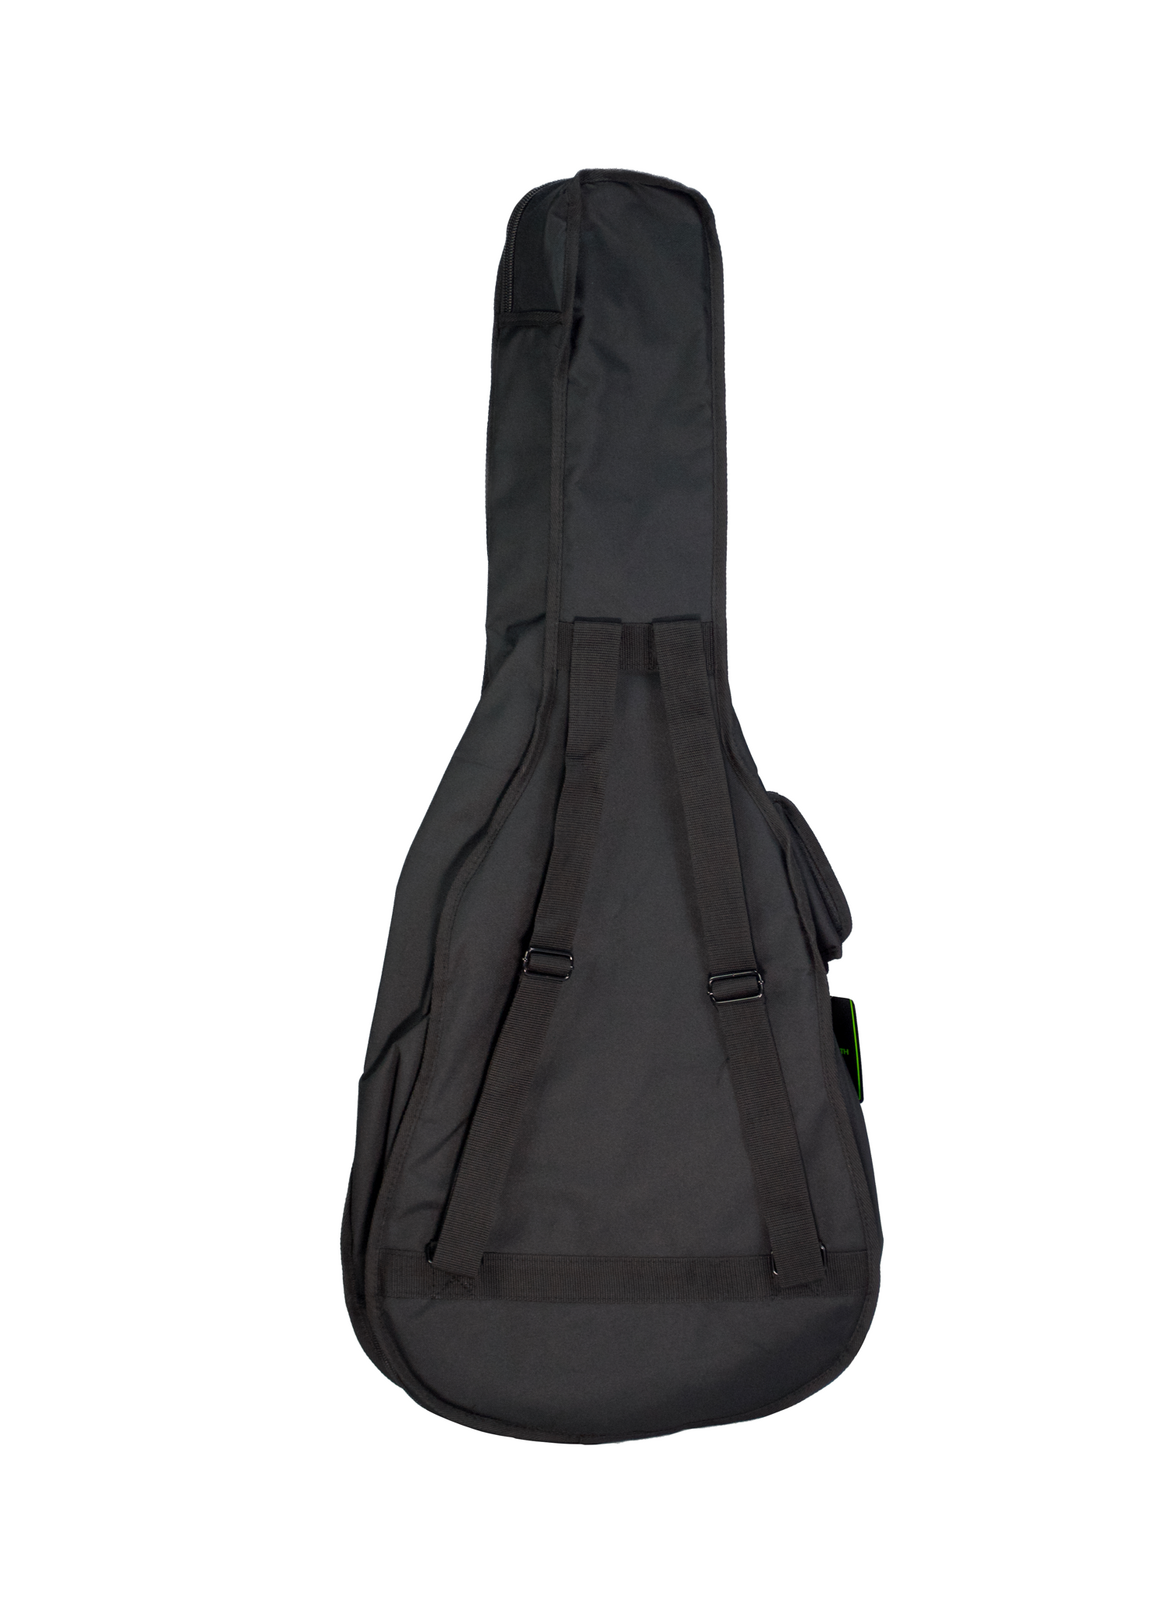 Mammoth MAM7C Classical Guitar Gig Bag | Black